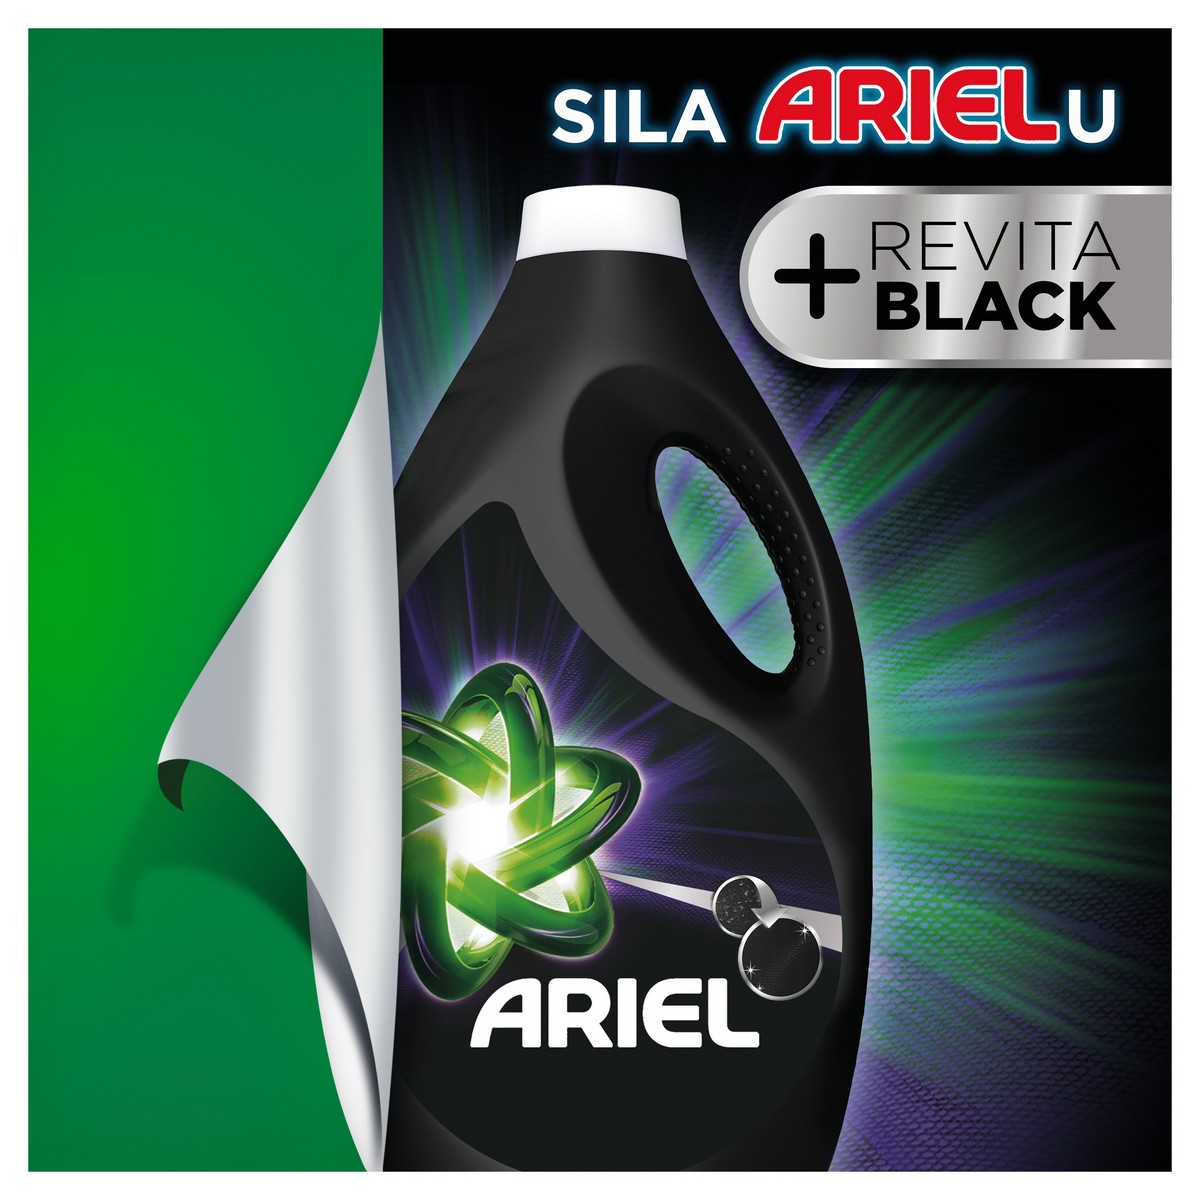 ARIEL 34PD 1.7L BLACK